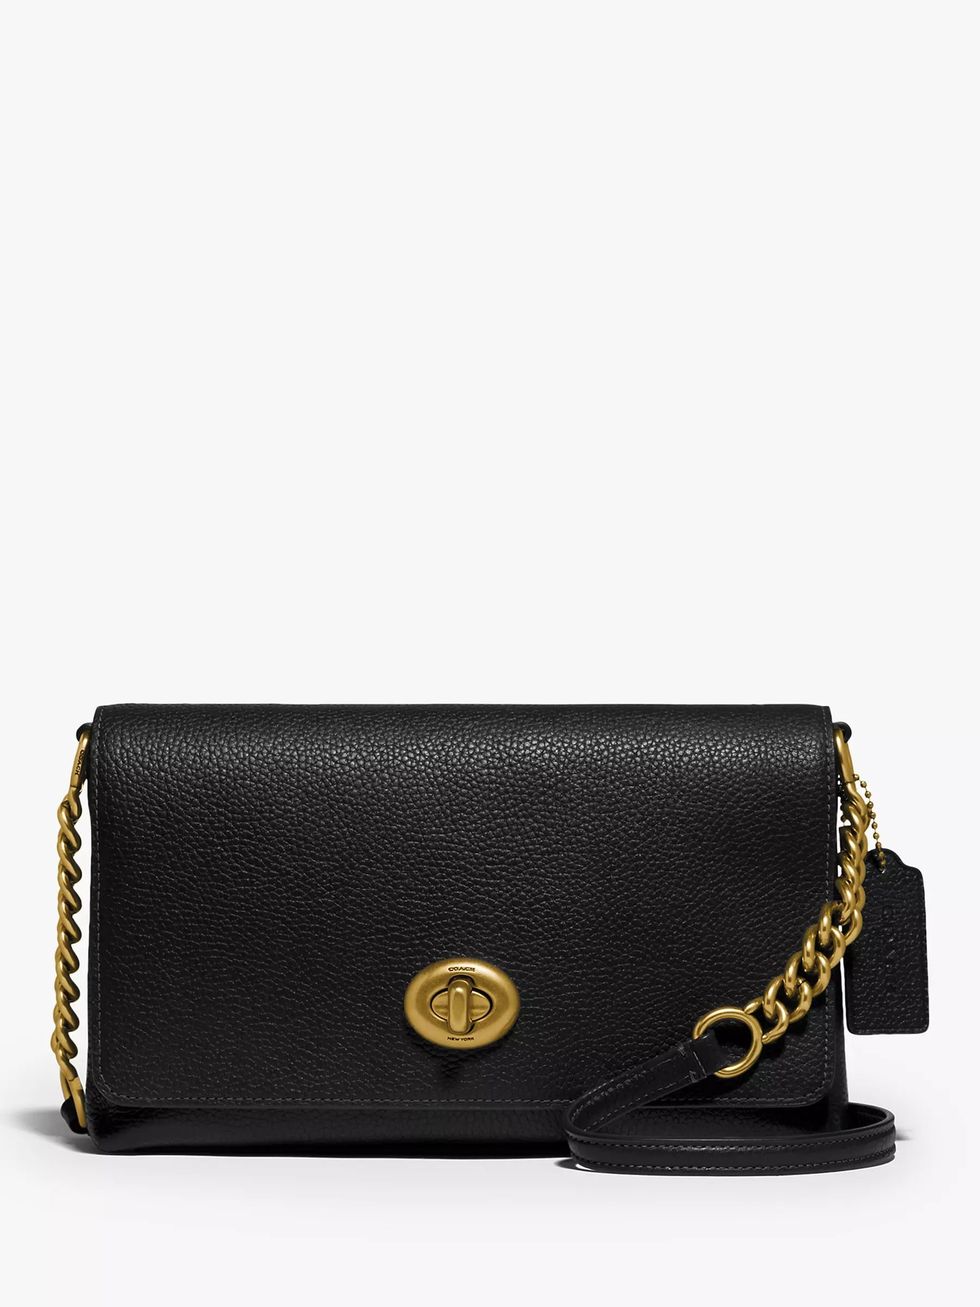 Seriously sexy designer handbags for under £3000 – including a